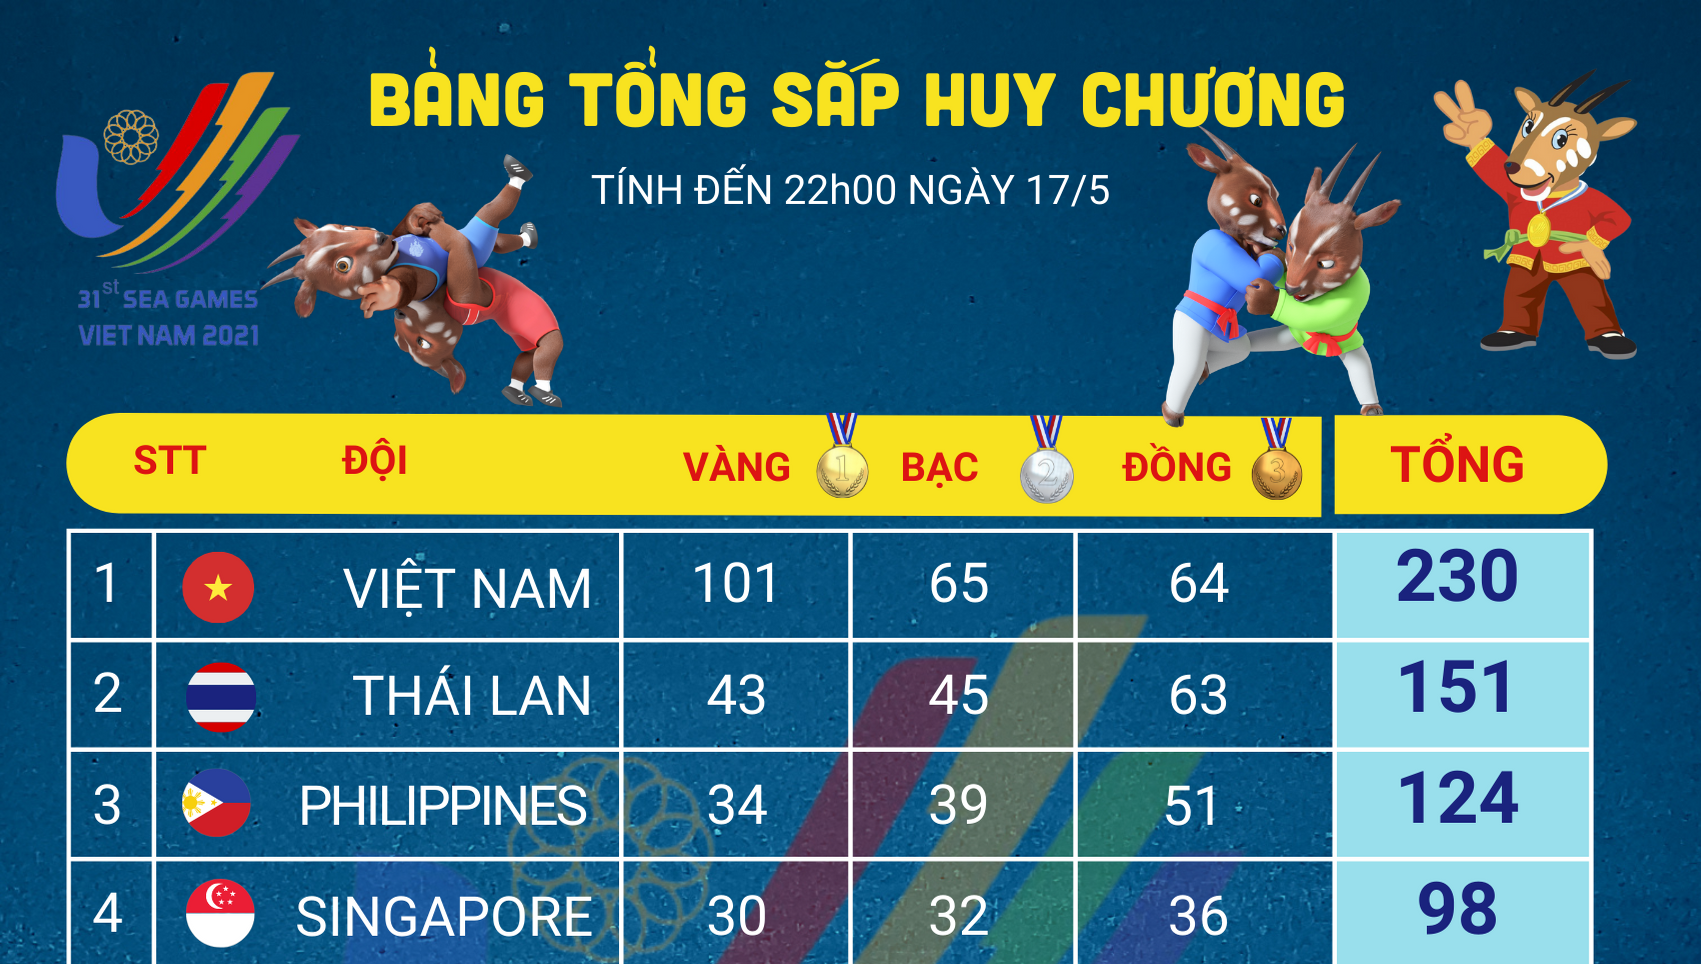 [Infographics] Bảng tổng sắp huy chương SEA Games 31 ngày 17/5: Việt Nam vượt mốc 100 Huy chương Vàng